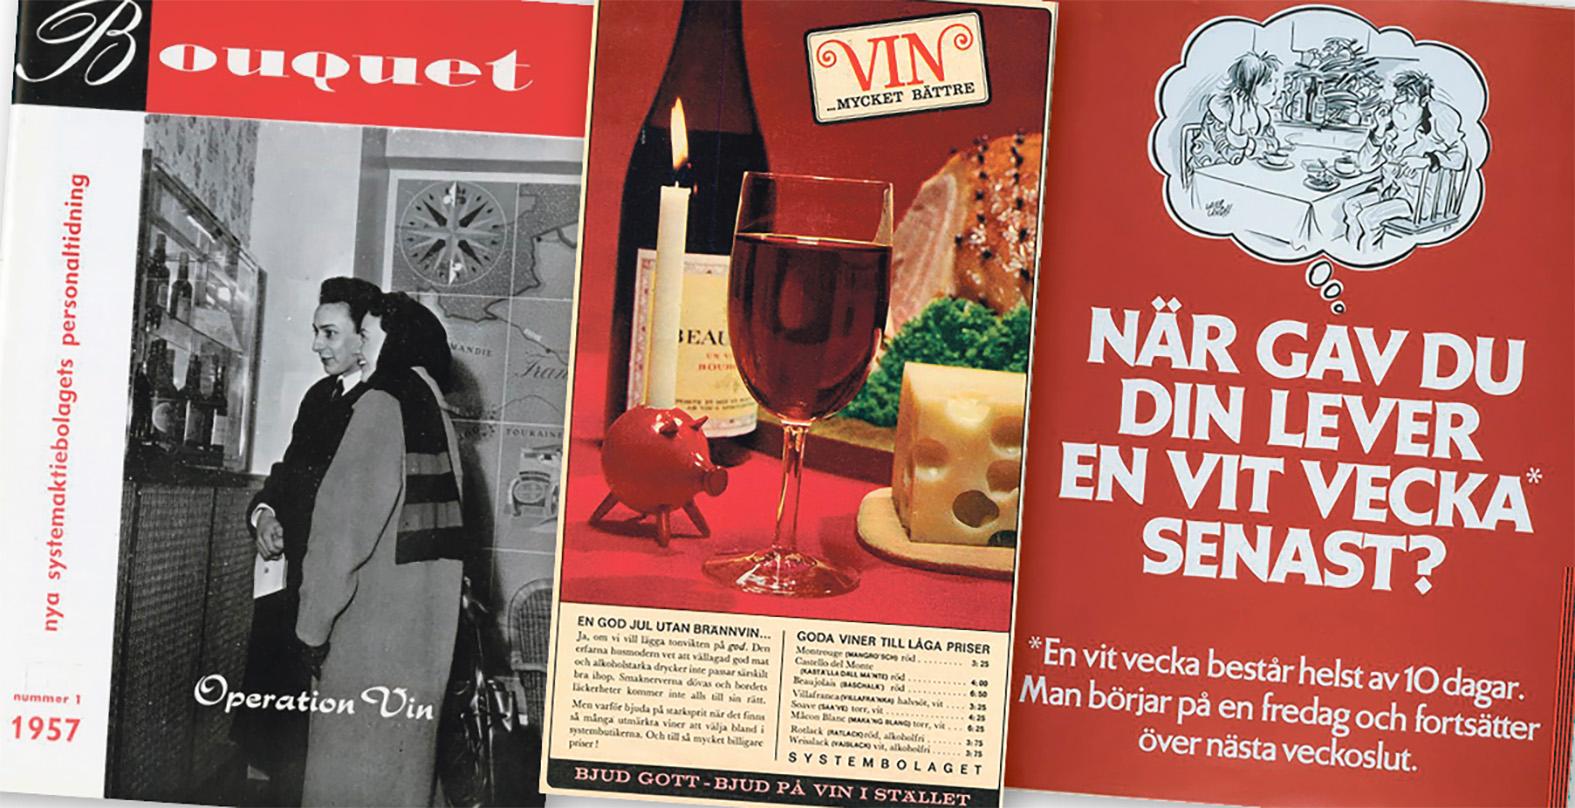 Från operation vin till vit vecka – Systembolagets kampanjer 1957 respektive 1978.